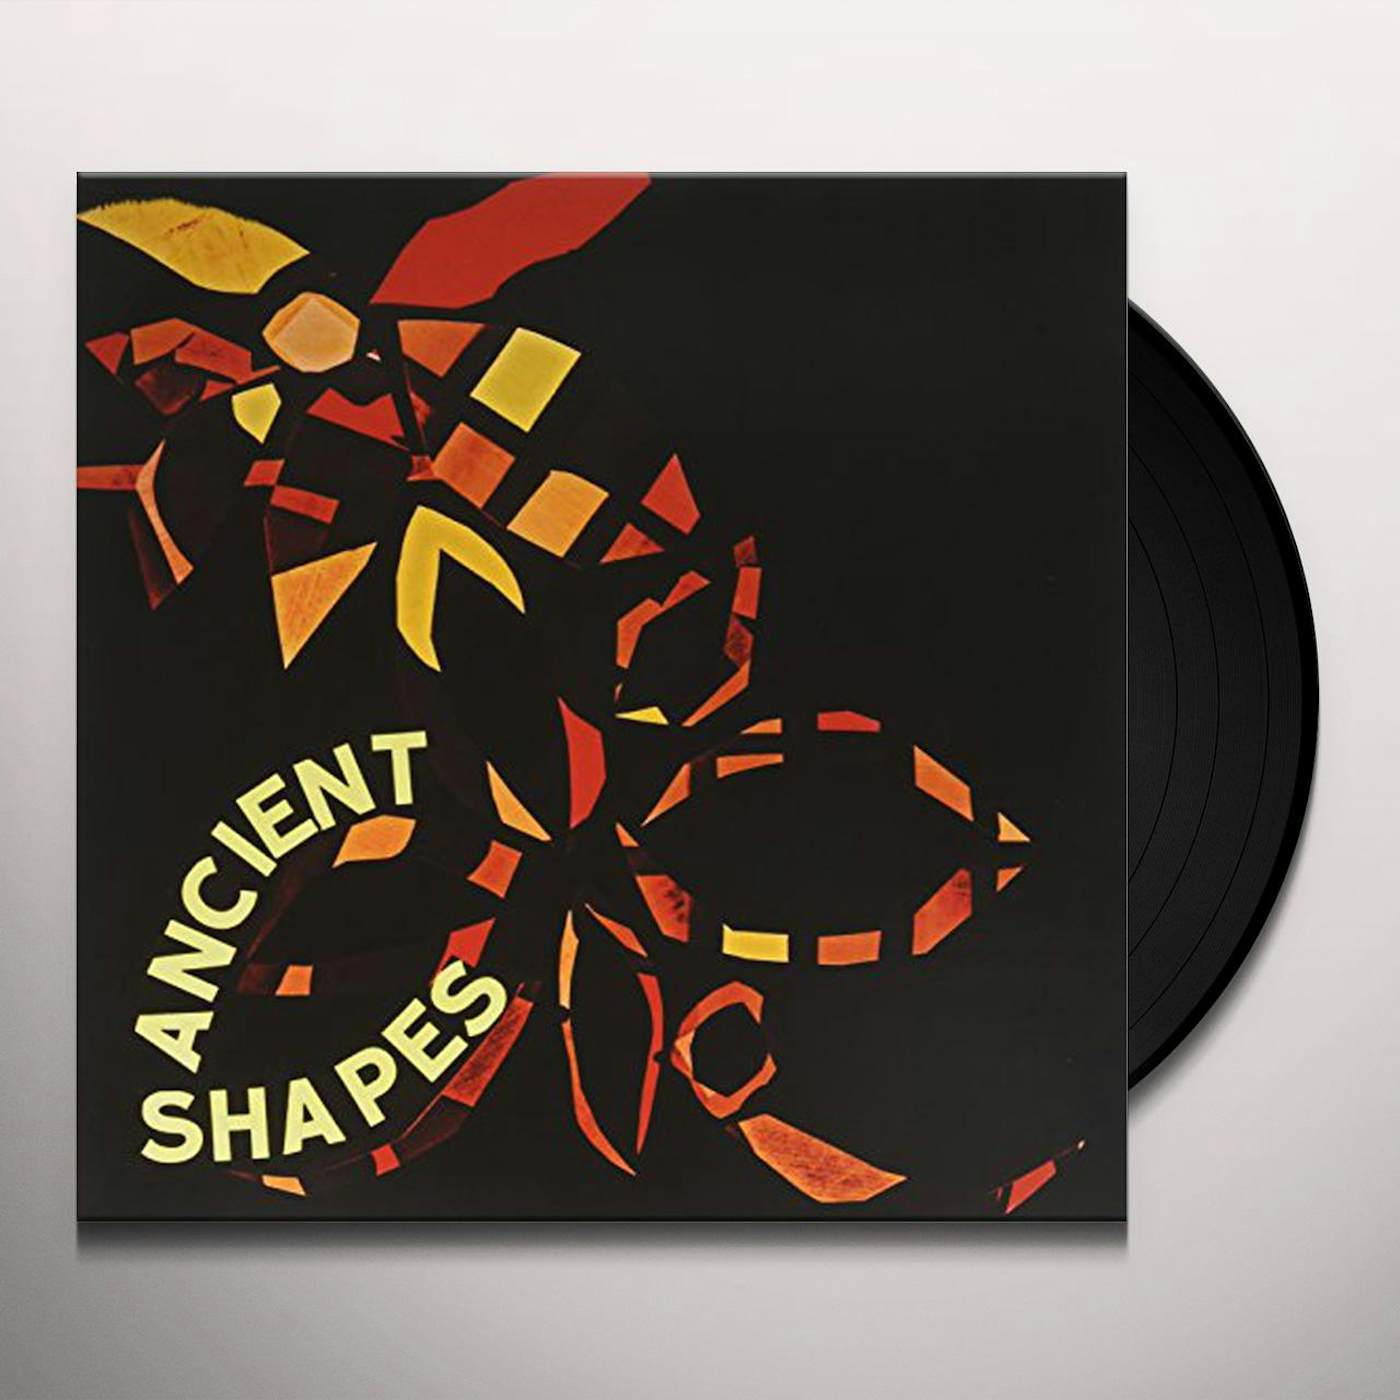 Ancient Shapes Vinyl Record